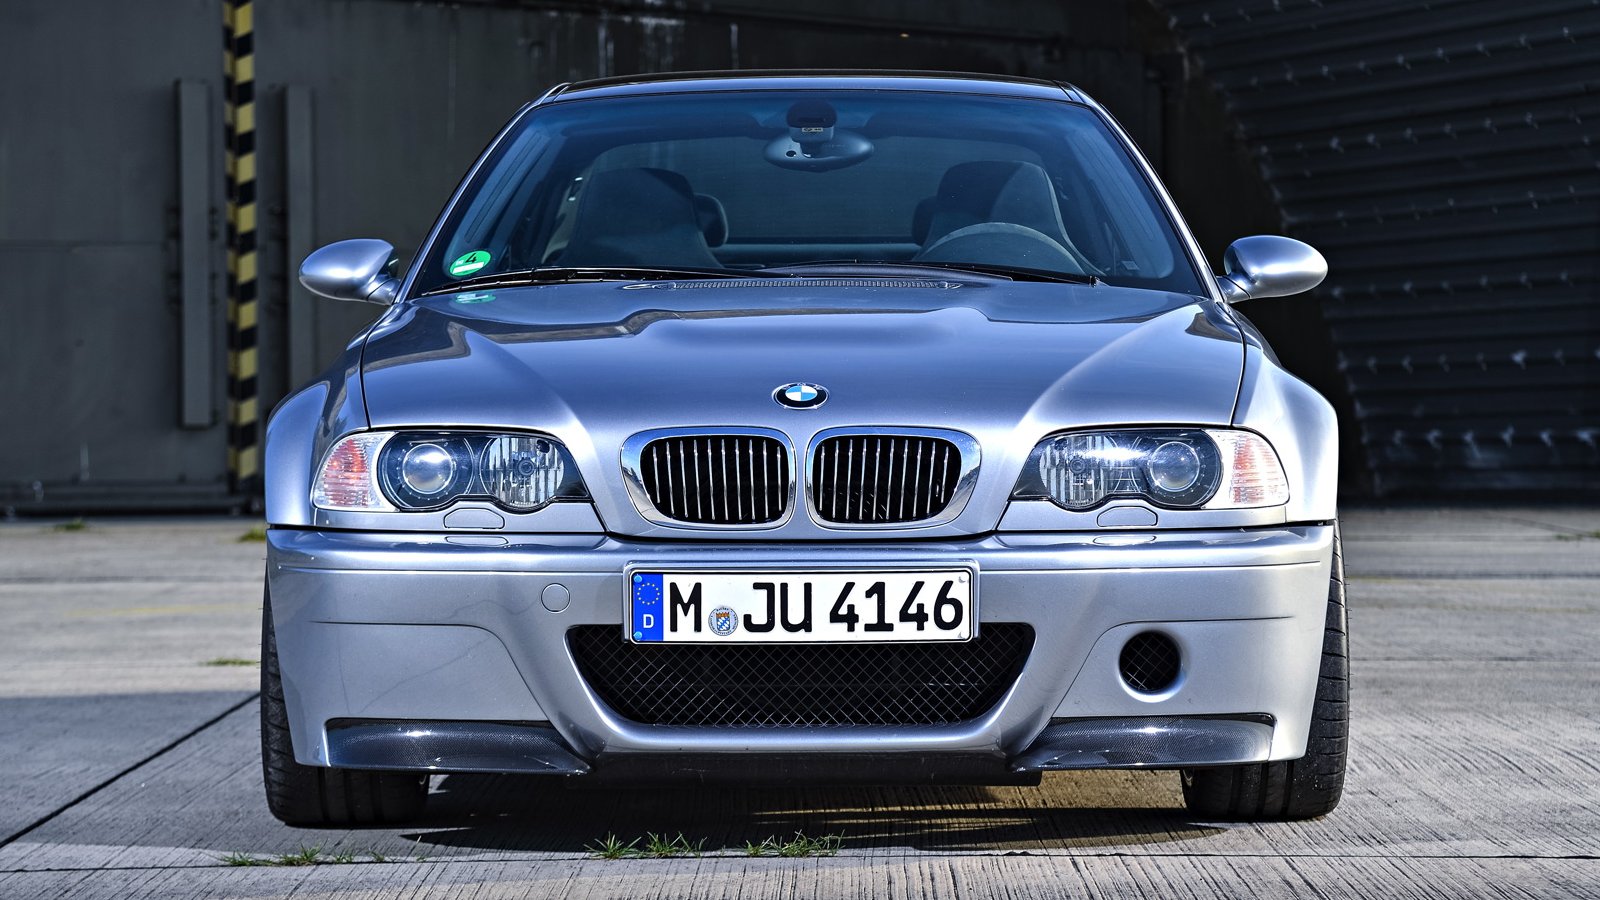 BMW M3 CS E46 - SoyMotor.com